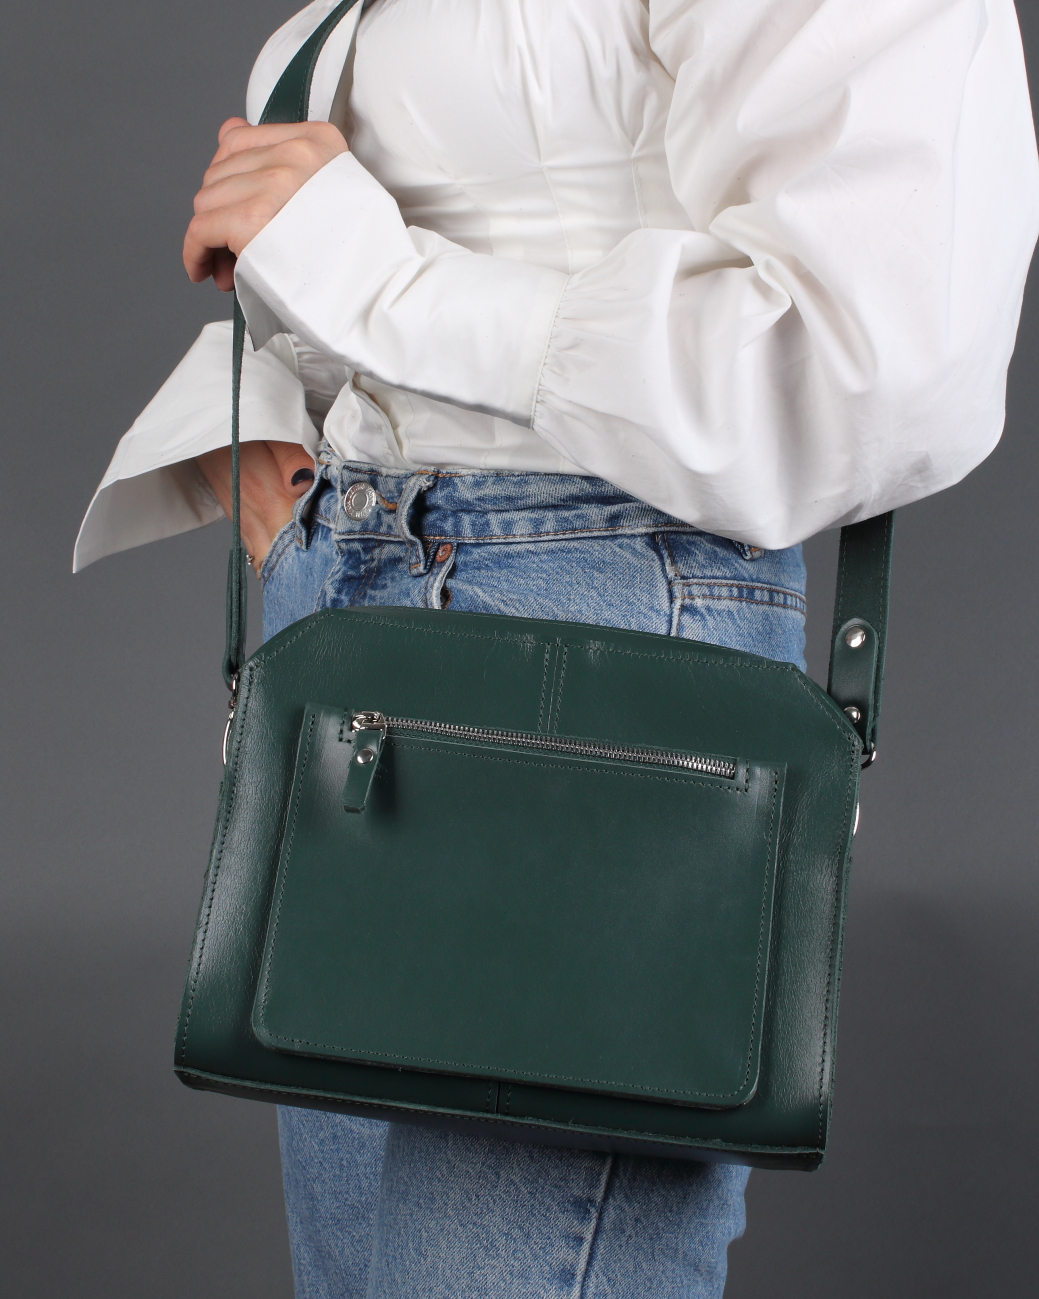 Женская кожаная сумка через плечо зеленая A017 emerald